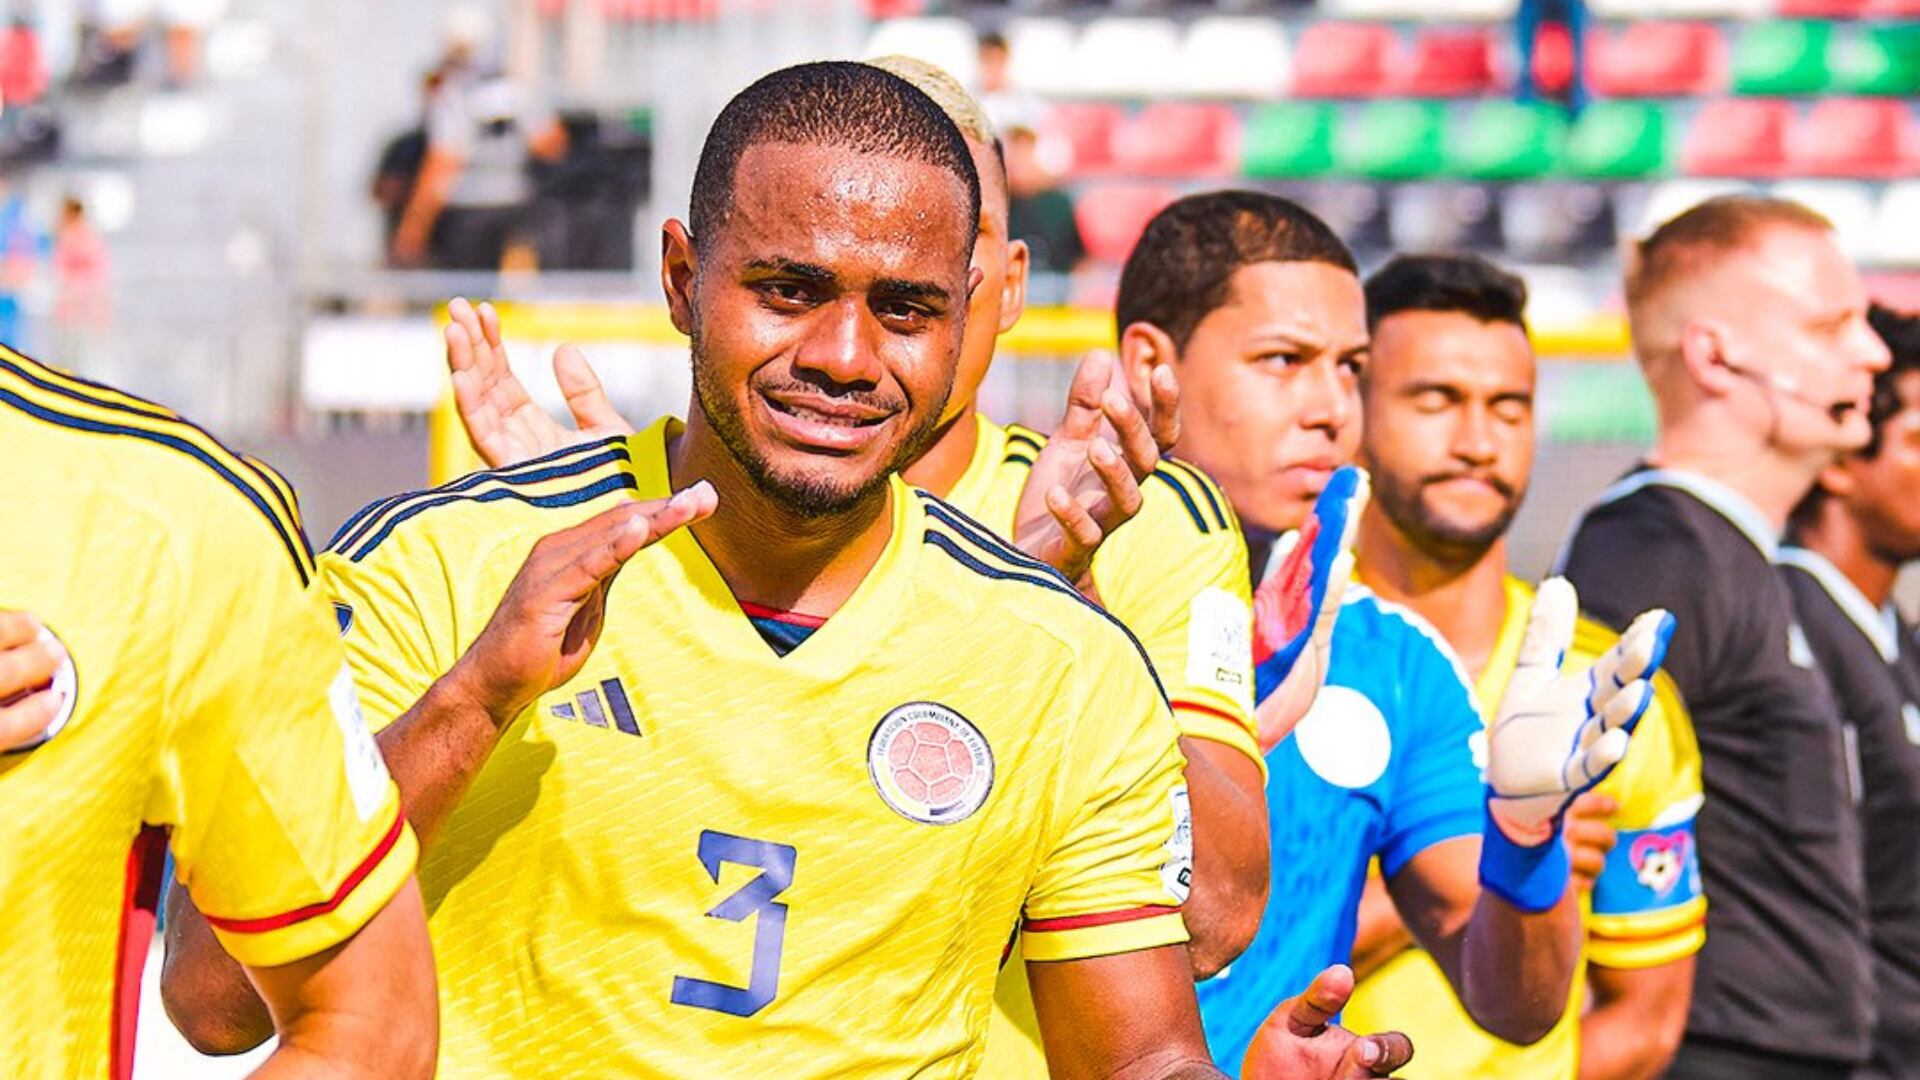 La selección Colombia de Fútbol Playa fue eliminada del Mundial - crédito @FCFSeleccionCol/X